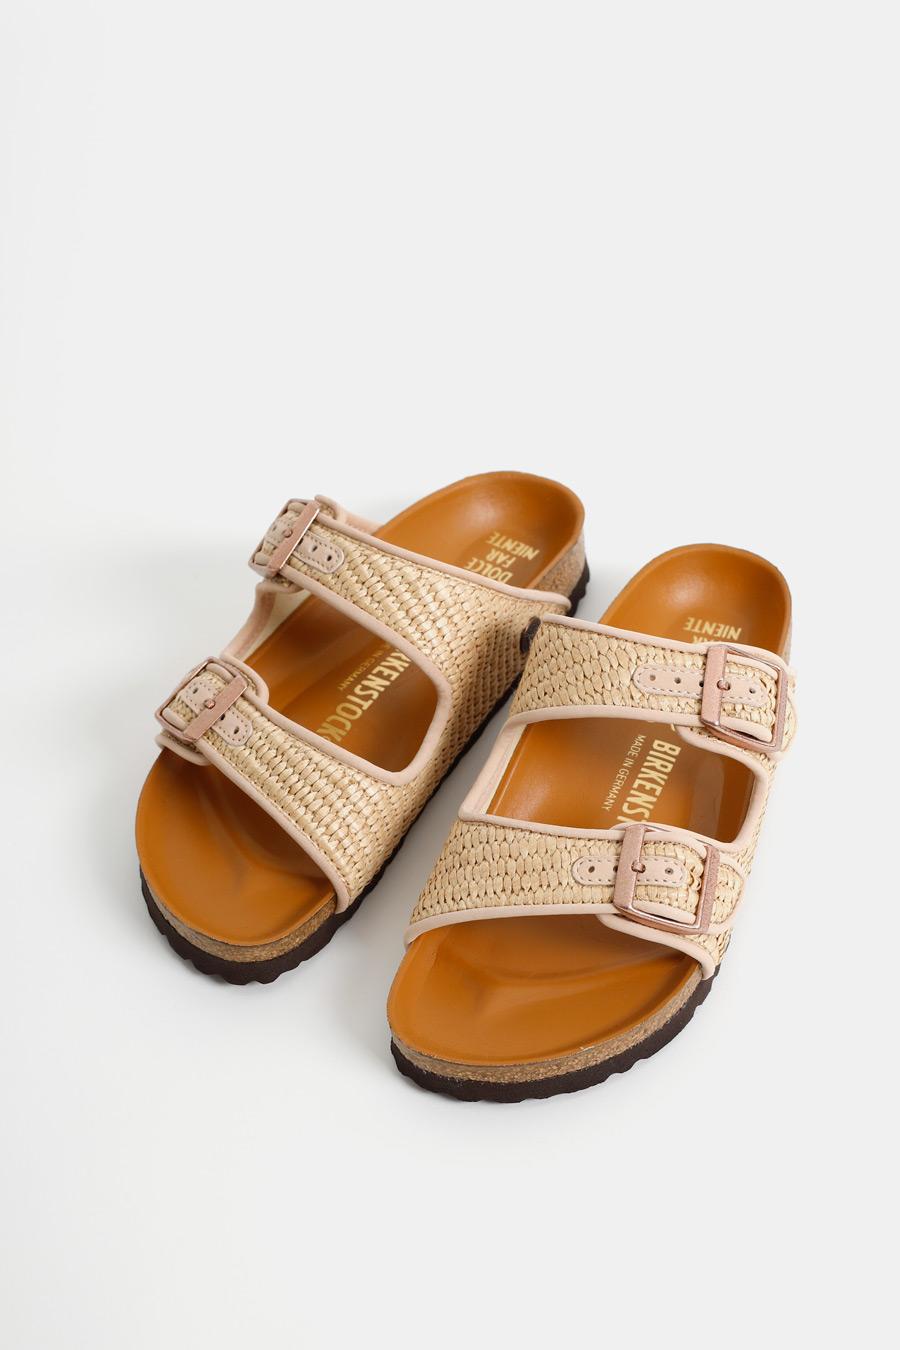 Birkenstock Raffia Sandals Flash Sales, 53% OFF | www.markiesminigolf.com